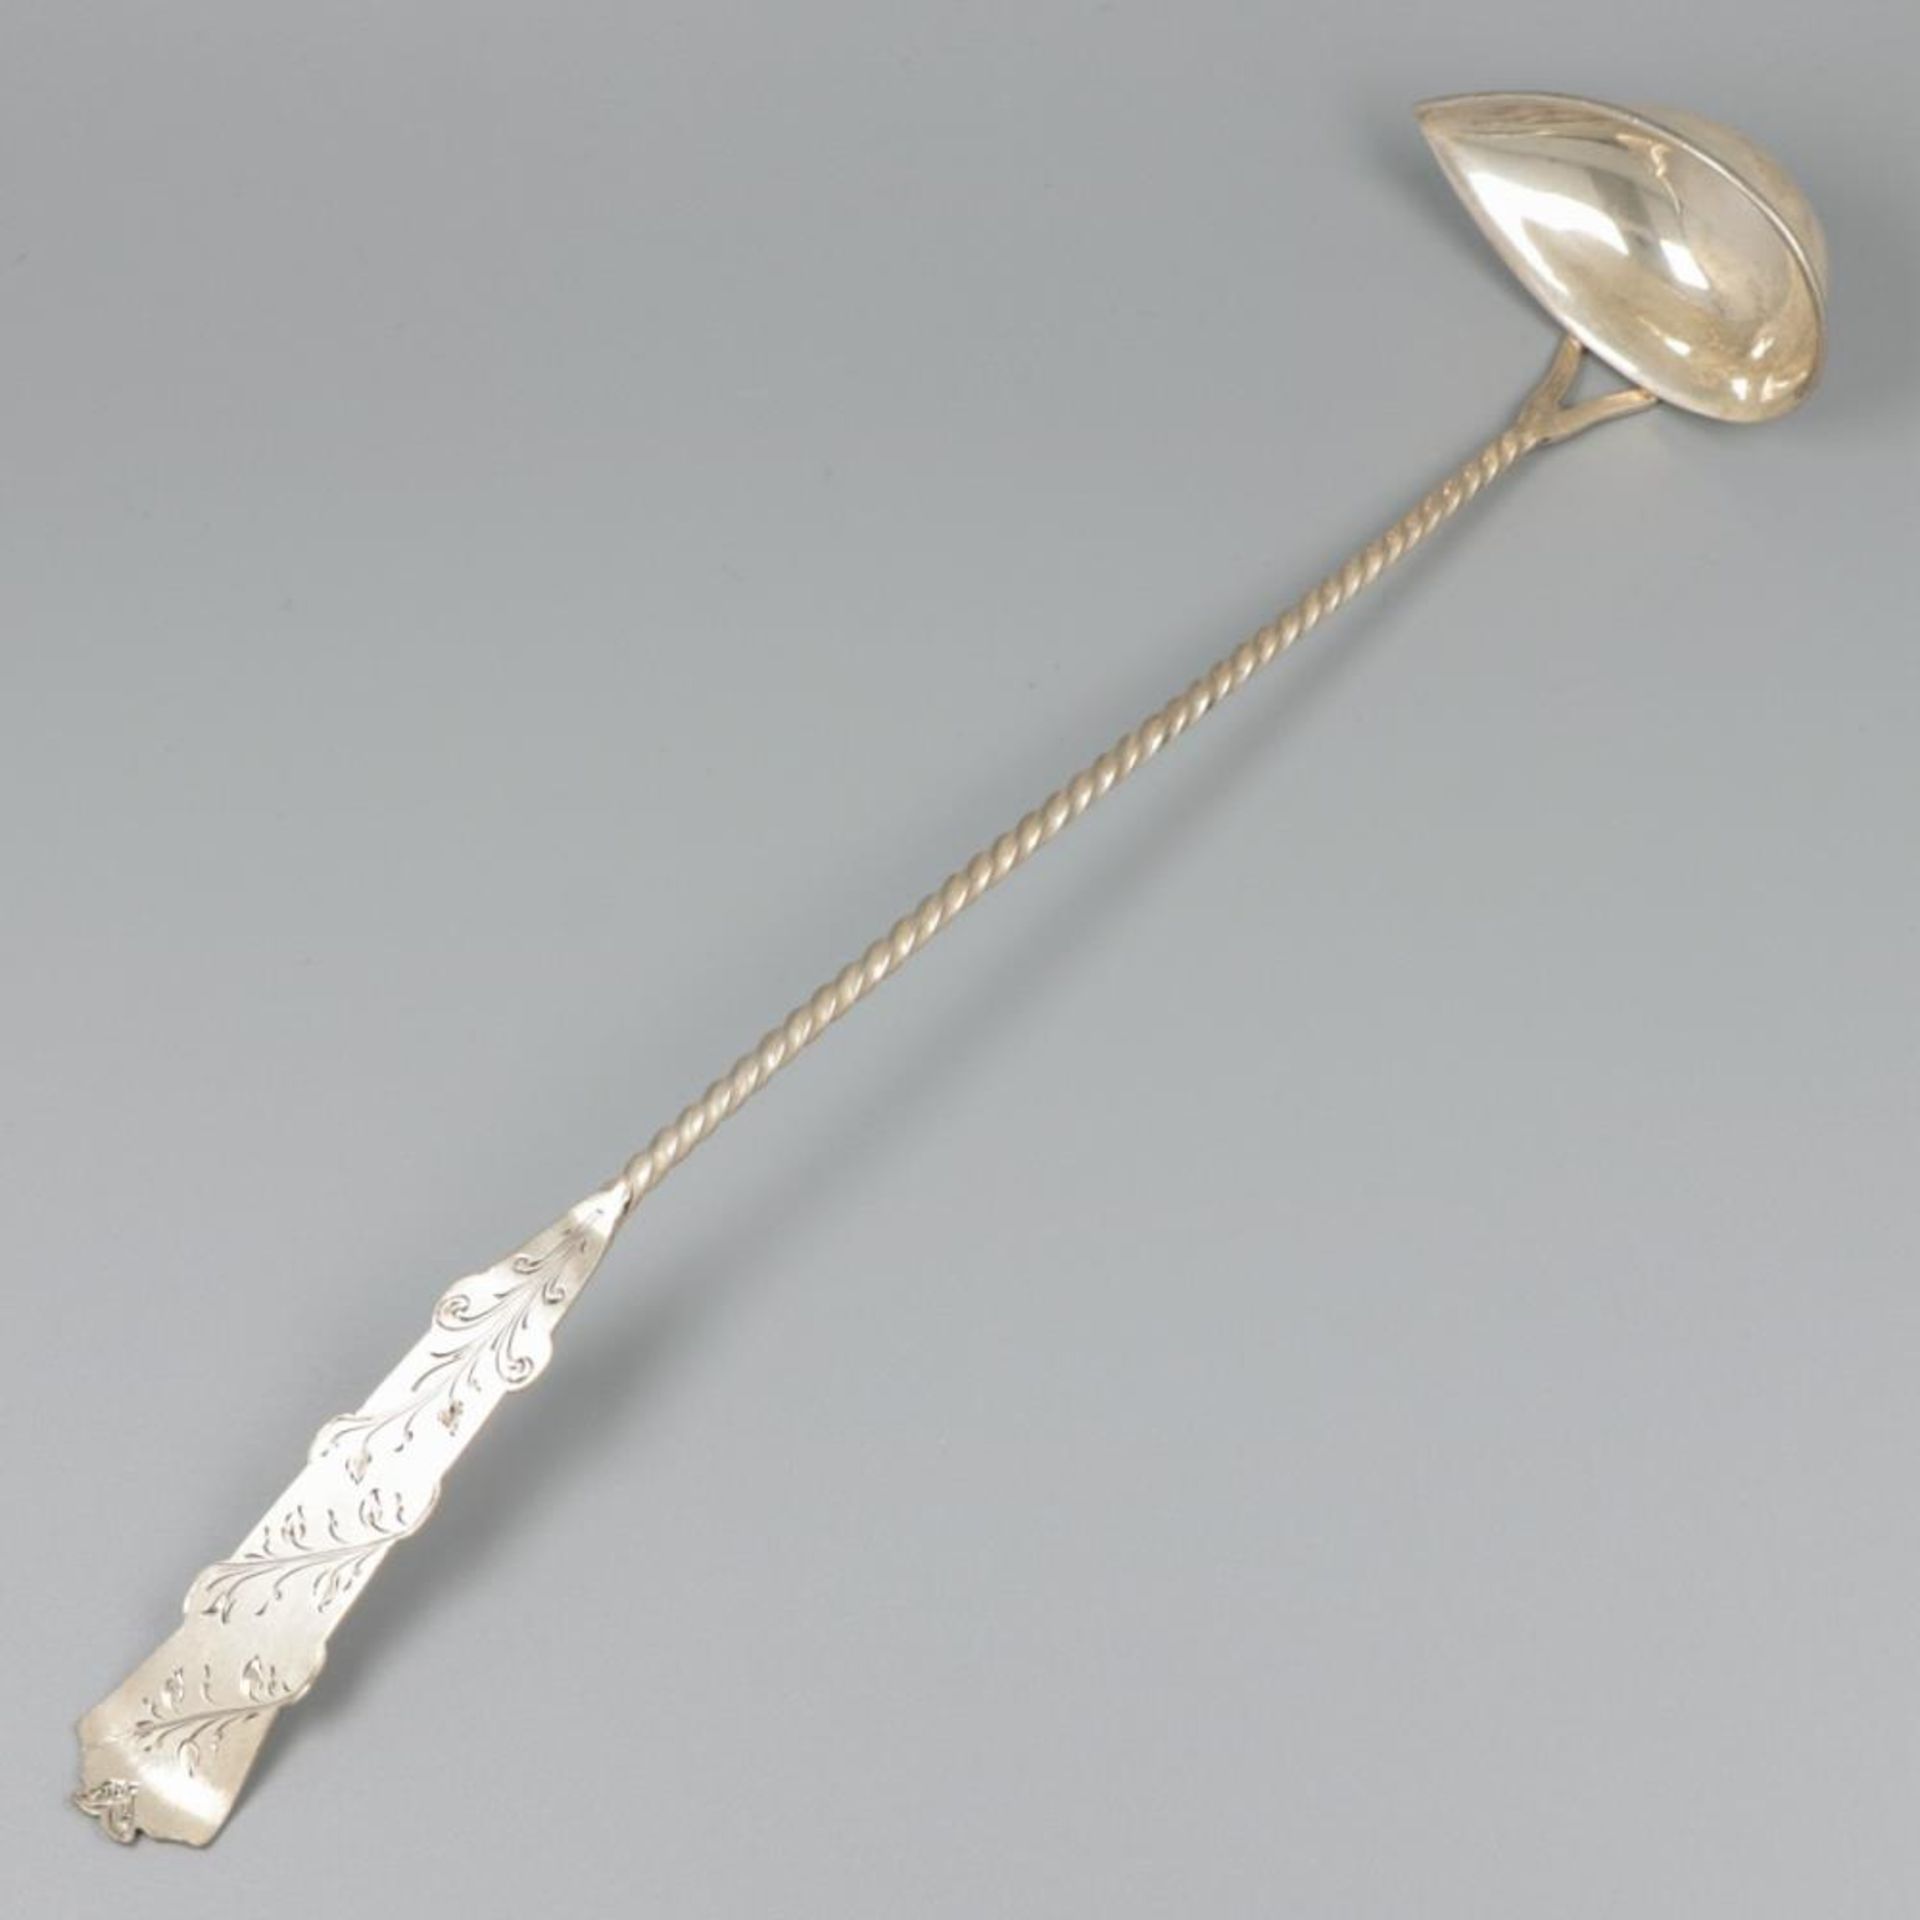 Bowl spoon silver.